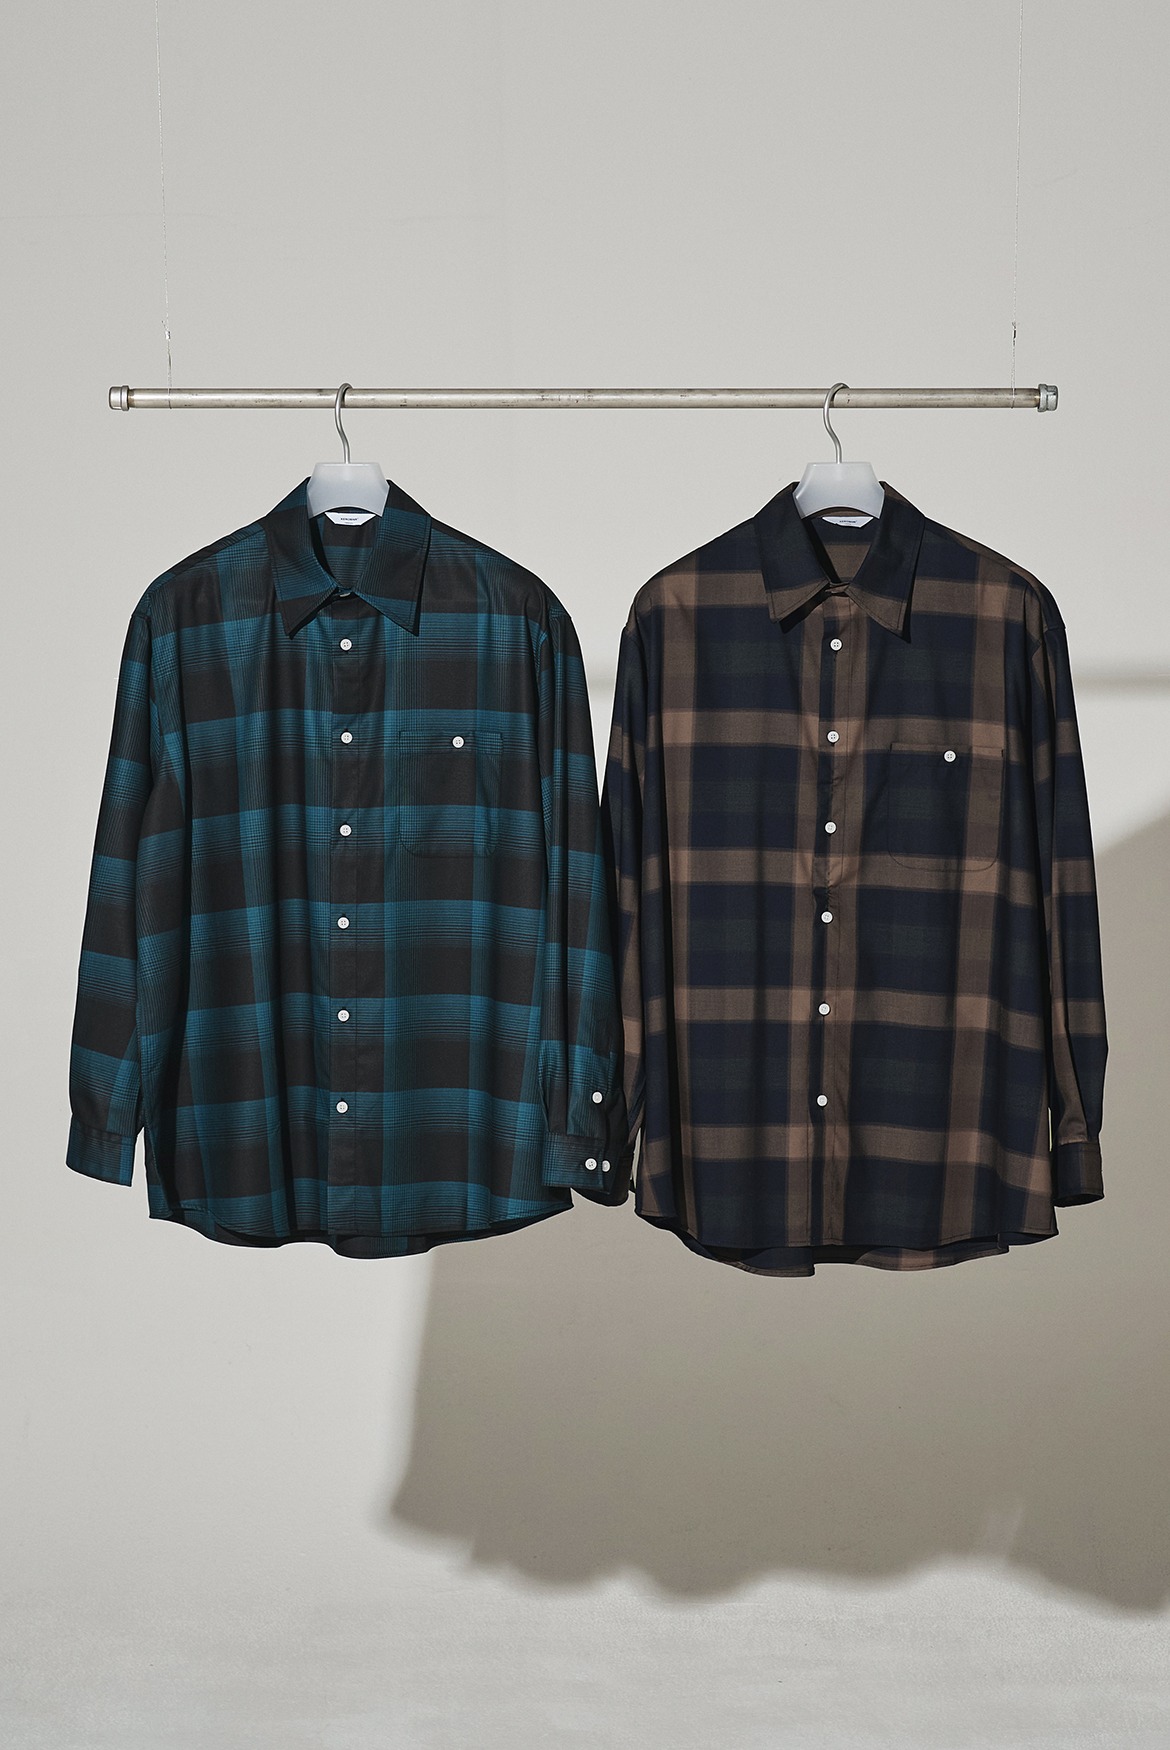 Rayon Check Shirts [2 Colors]